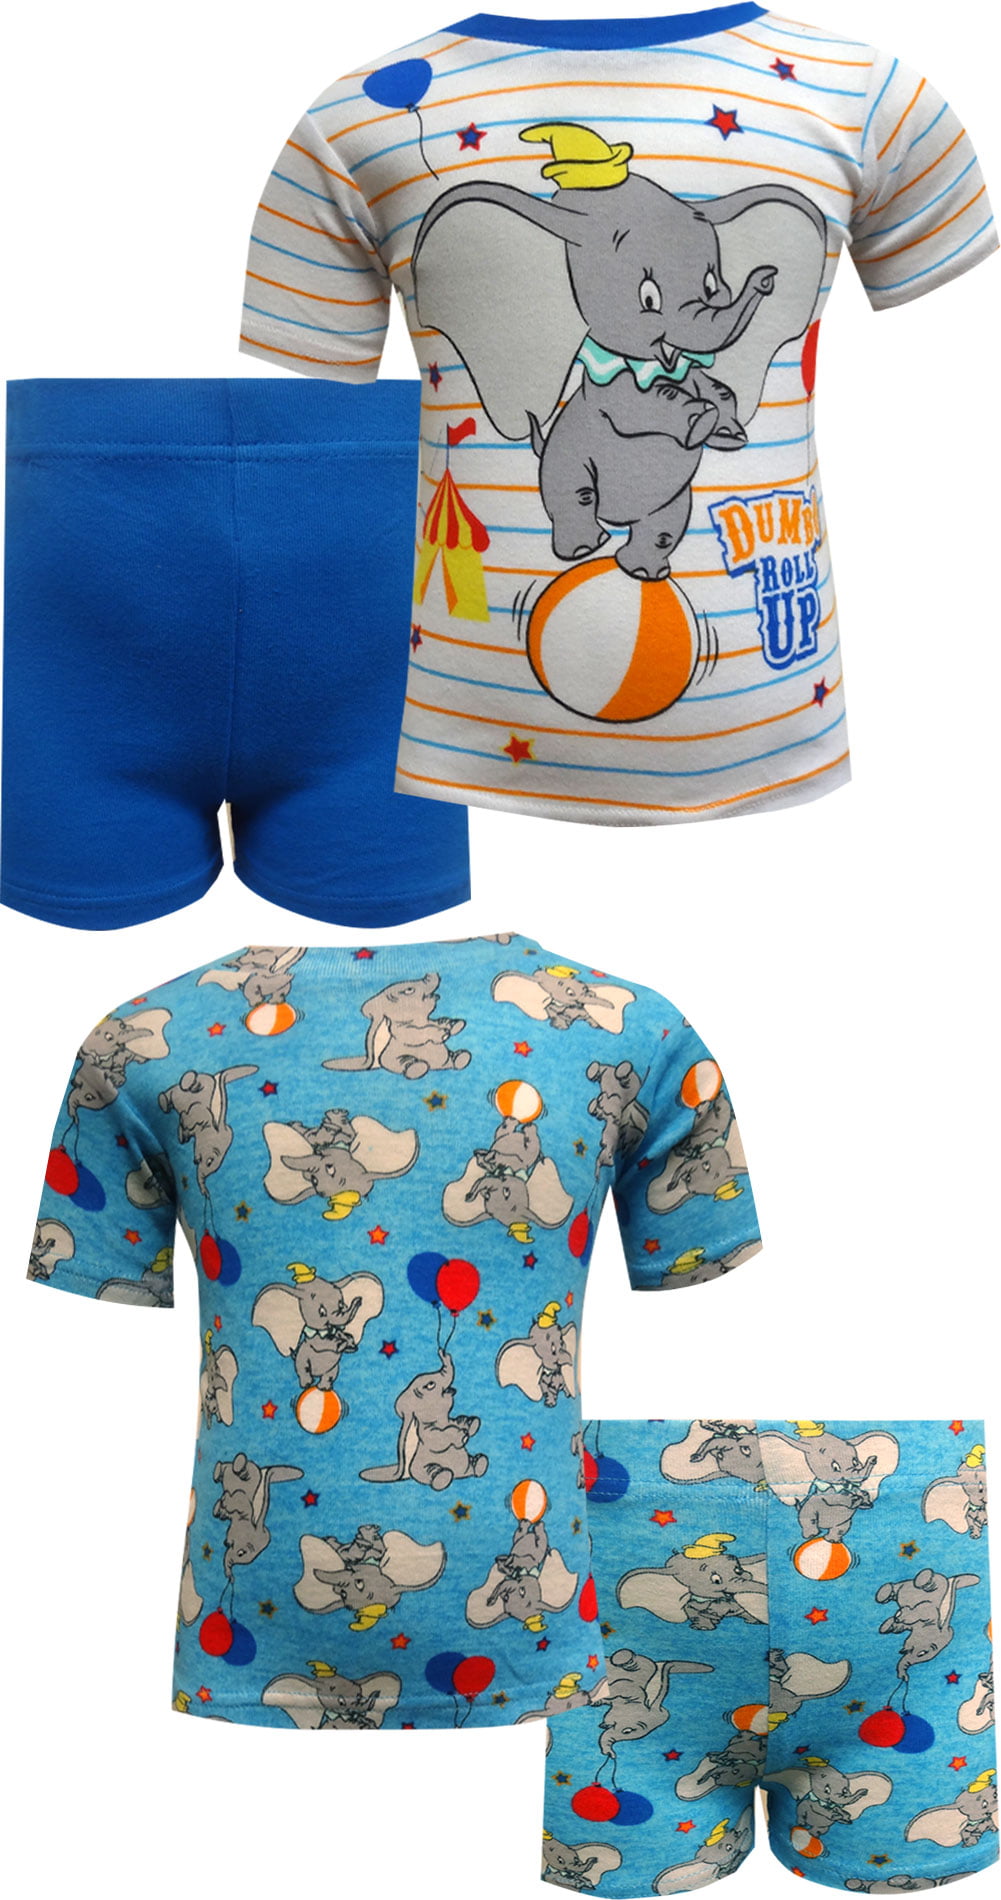 AME Sleepwear Boys Baby Shark 4 Piece Blue Cotton Toddler Pajamas